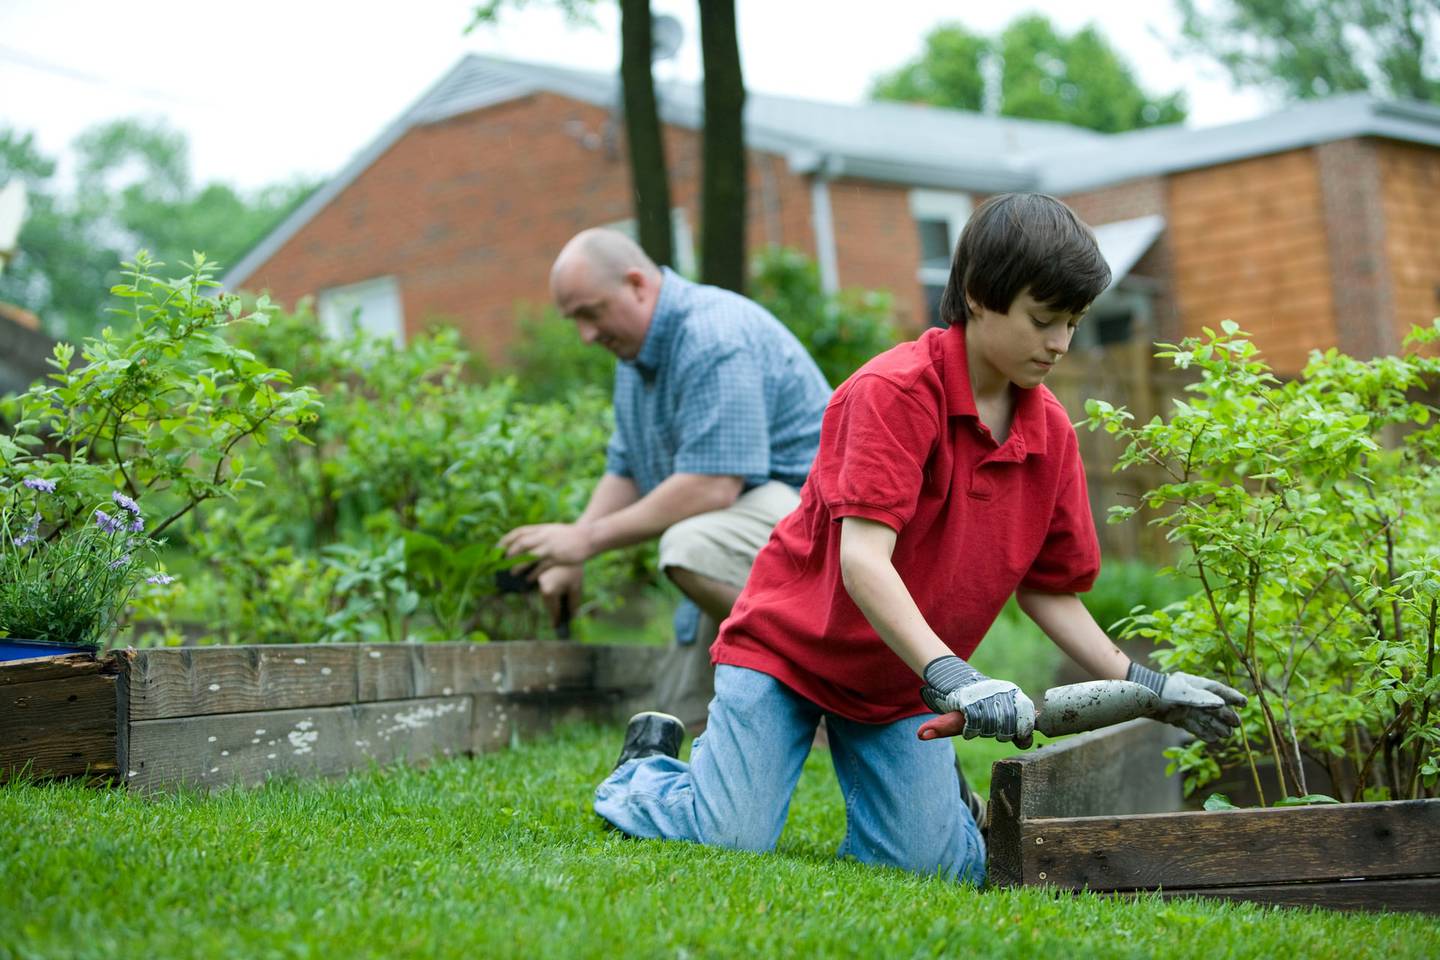 Los niños de 10 a 11 años pueden ayudar a limpiar la cocina, los baños o hacer trabajos en el jardín